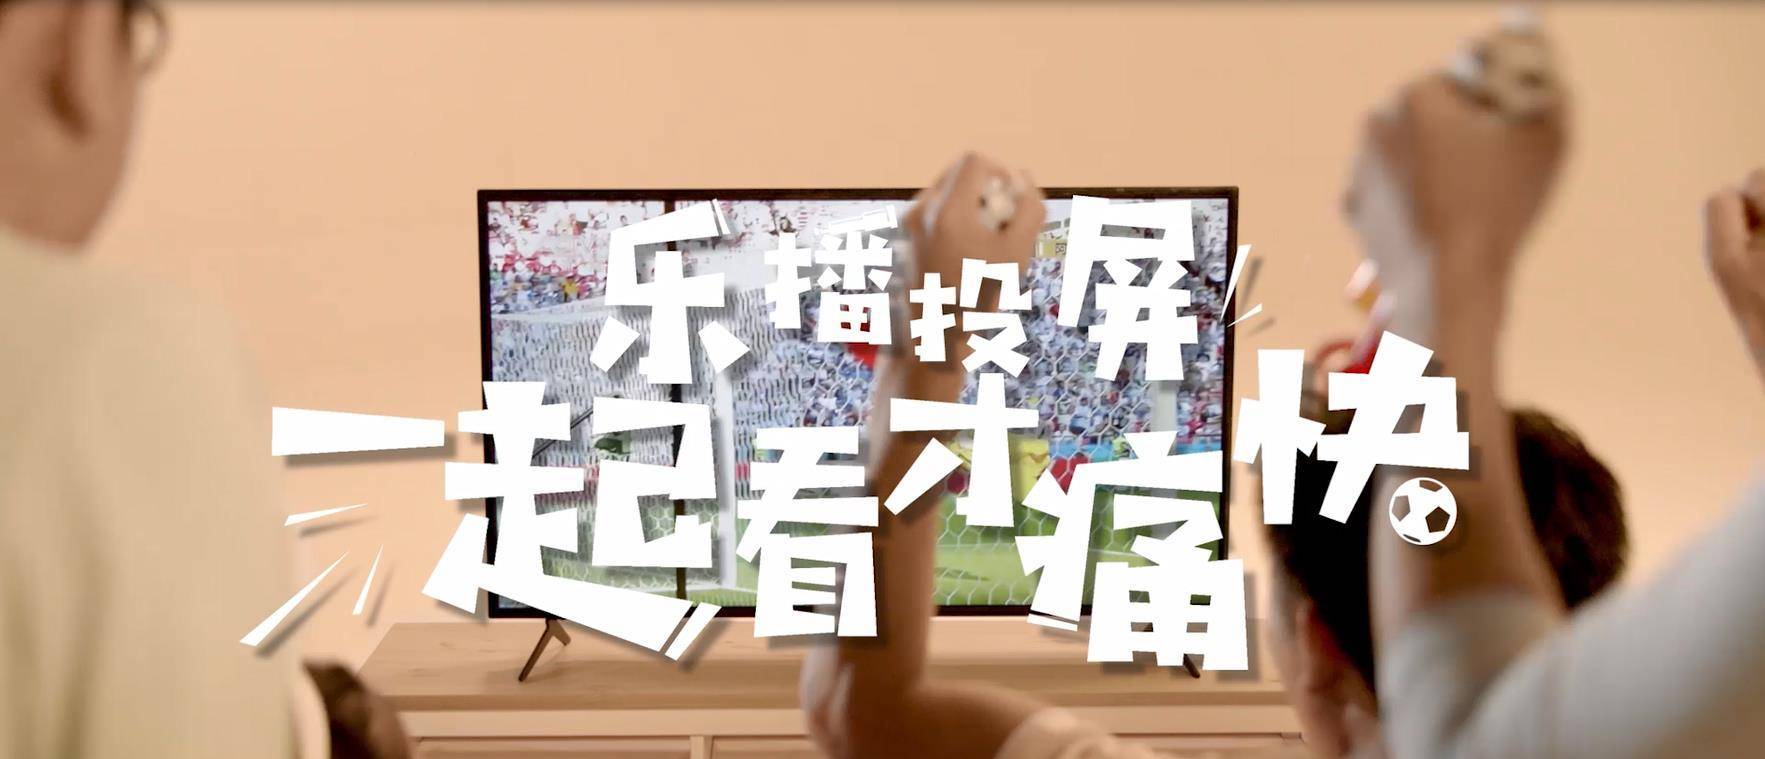 华为可以投影的手机屏幕
:世界杯期间如何使用投影幕观看足球比赛？